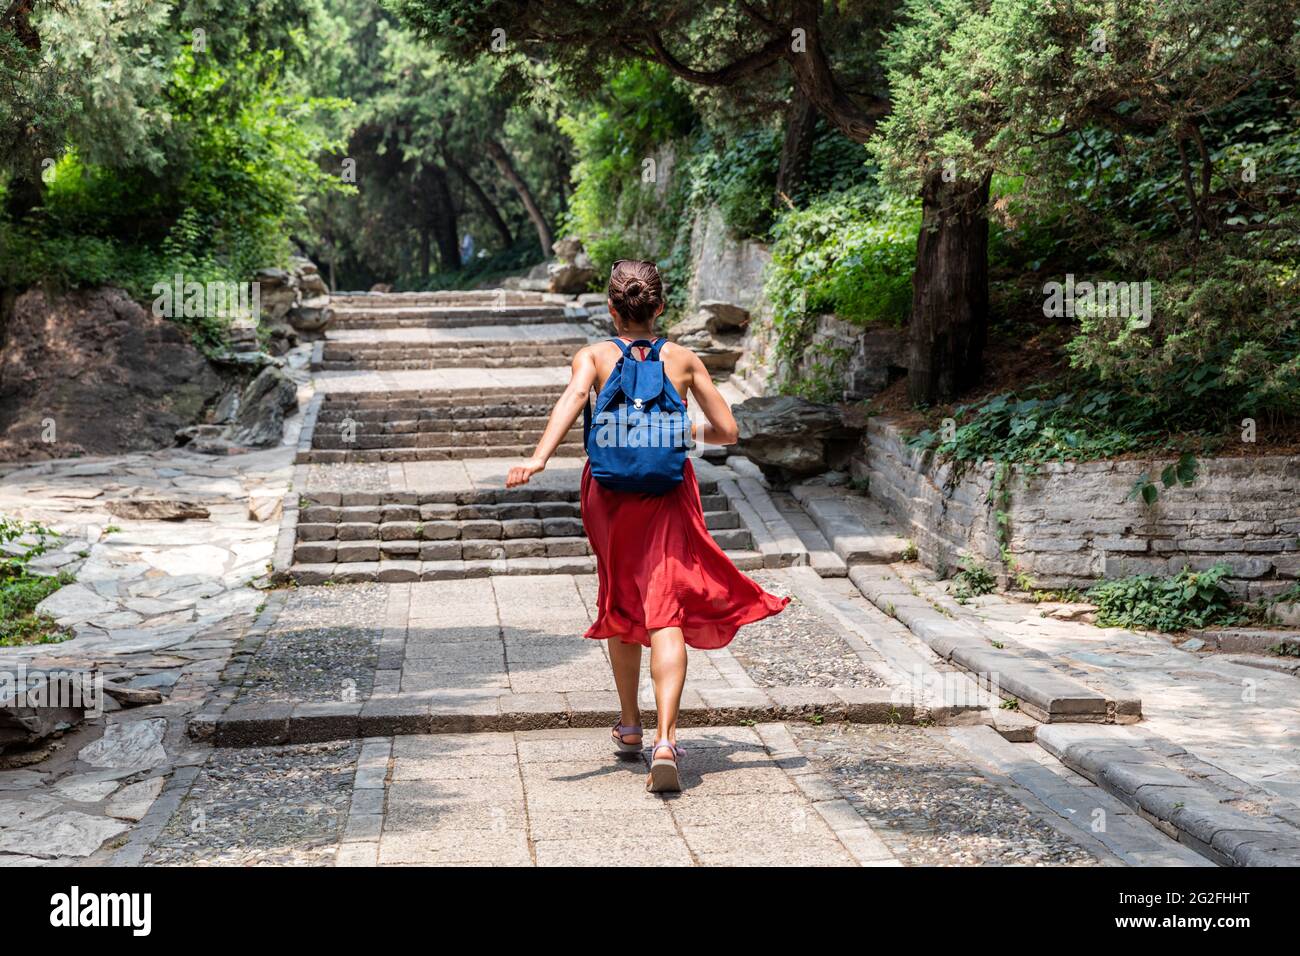 Glücklicher Backpacker läuft Spaß in Sommerpalastgärten in Peking, china. Asien Reise Urlaub, Mädchen Tourist genießen das spannende Leben Stockfoto